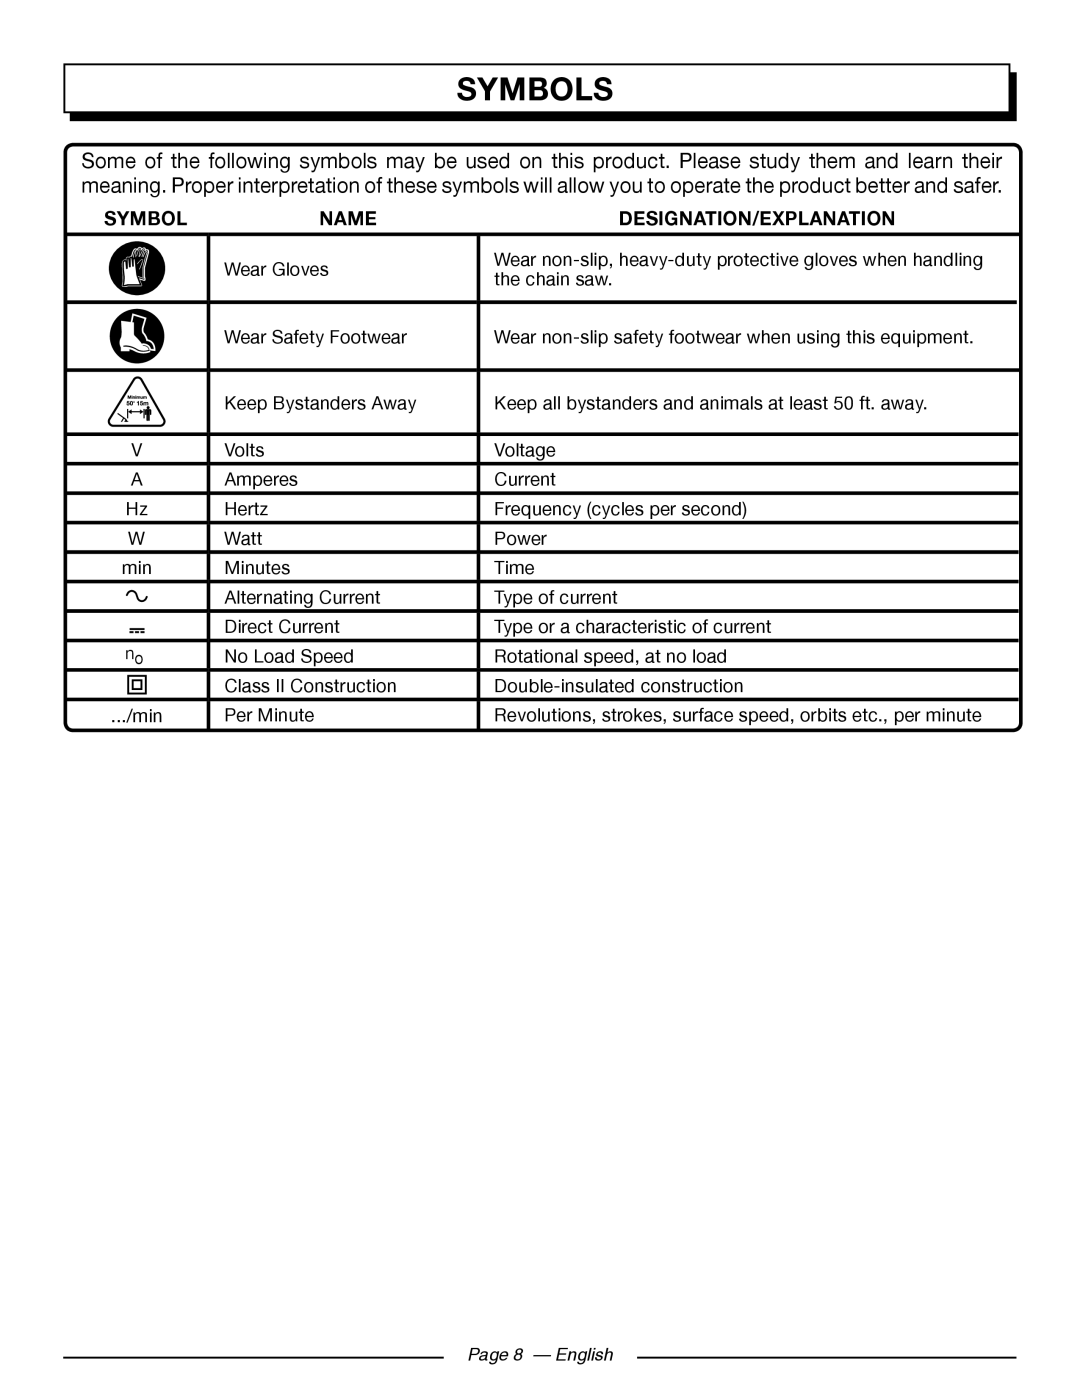 Homelite UT43122, UT43102 manuel dutilisation Symbols, Name, Designation/Explanation, Page 8 - English 